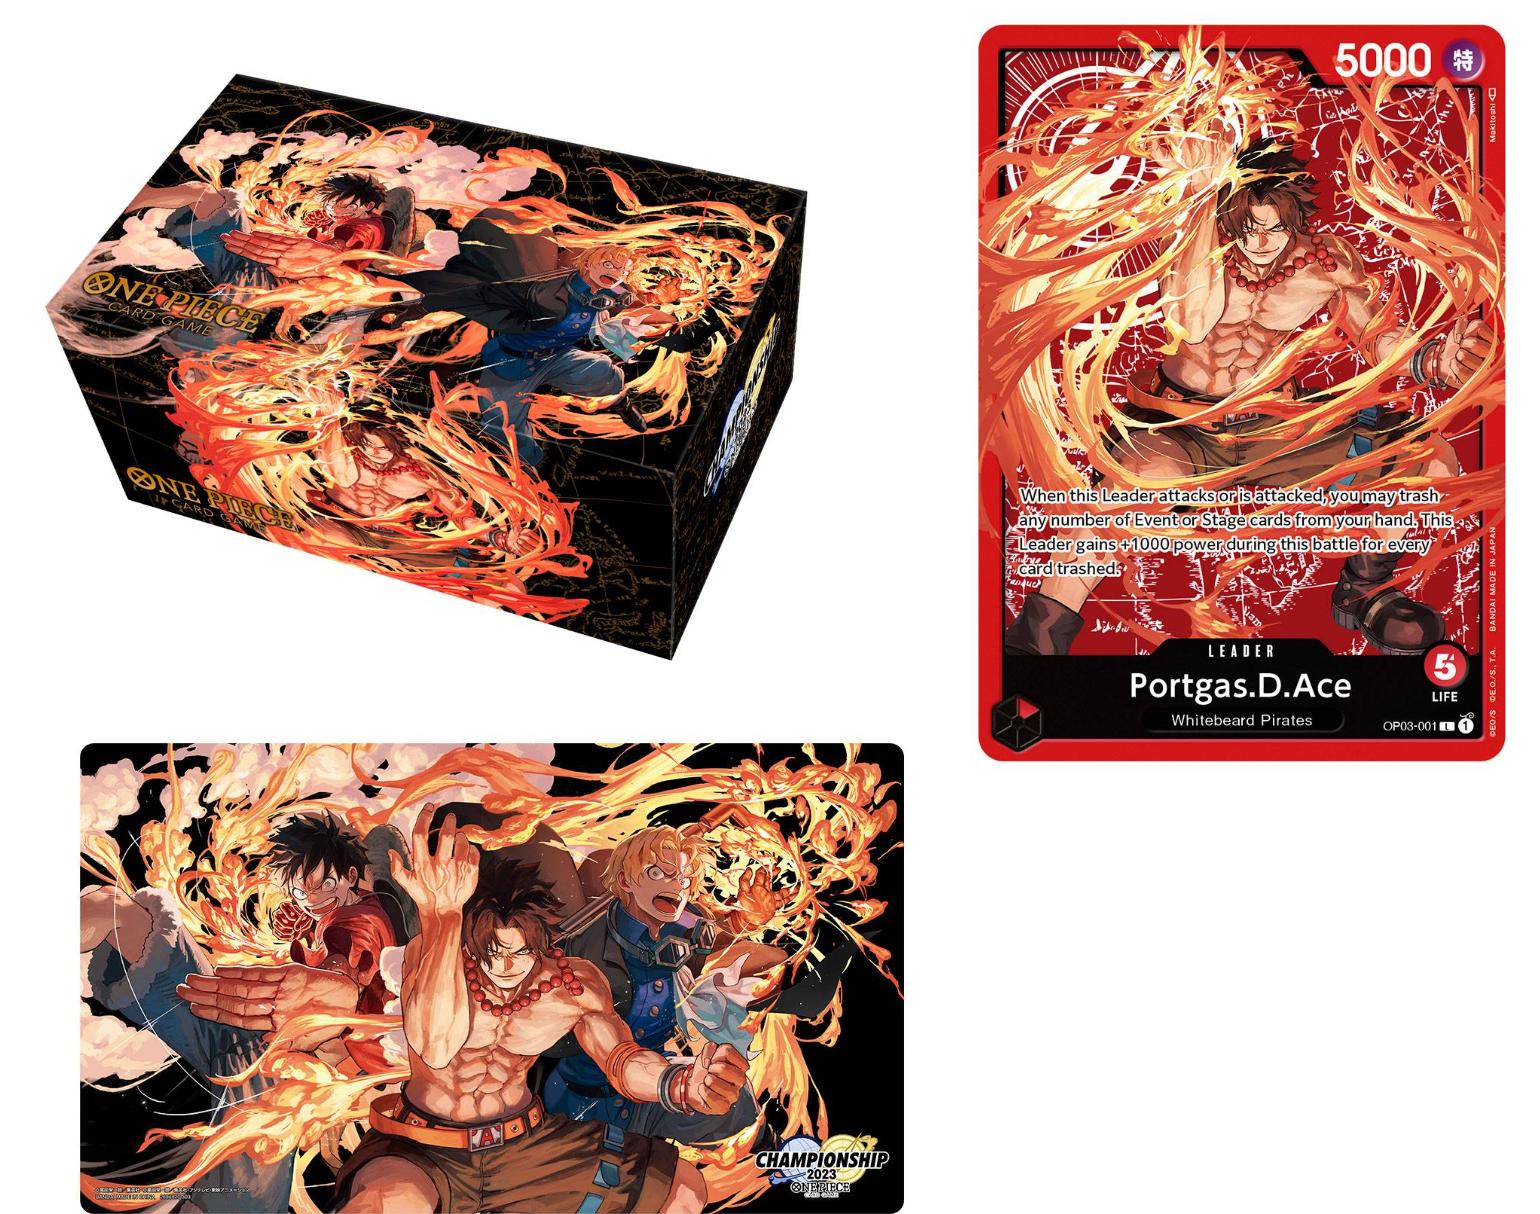 Boutique du jeu de cartes One Piece officiel, accessoires et figurines –  Cartes One Piece Card Game TCG